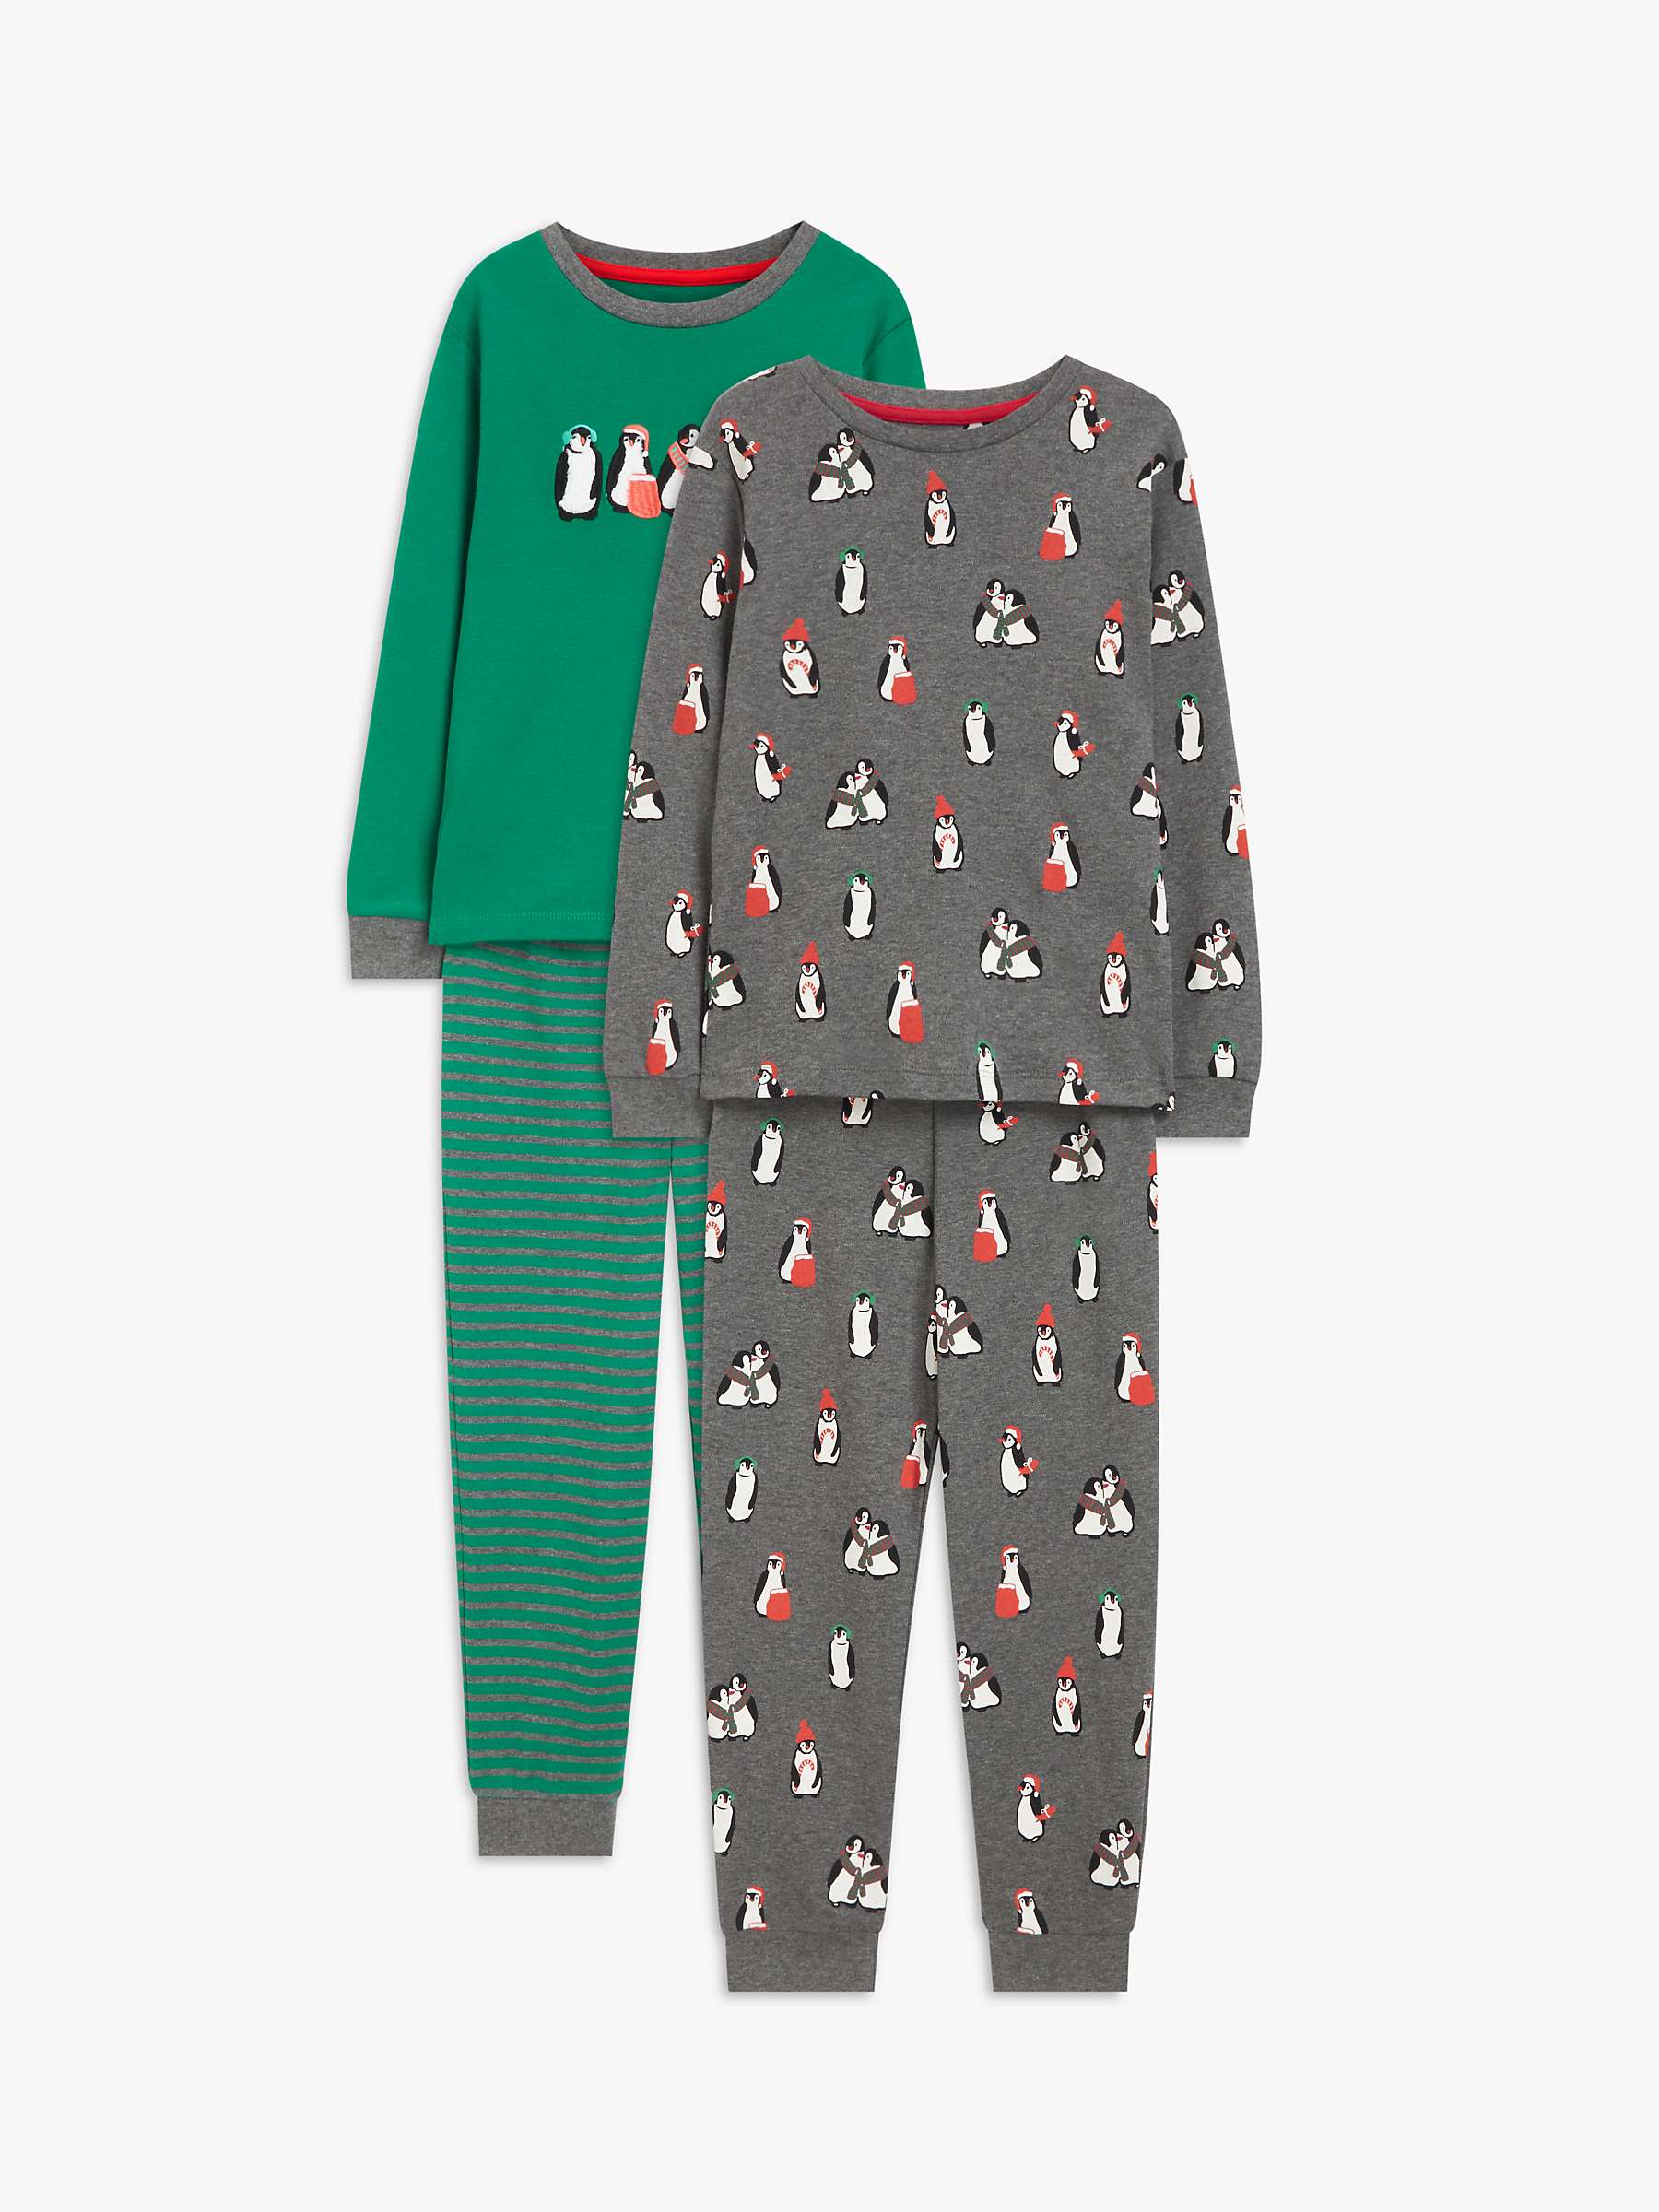 John Lewis Kids' Cuddly Penguins Pyjamas, Pack of 2, Green/Multi at ...